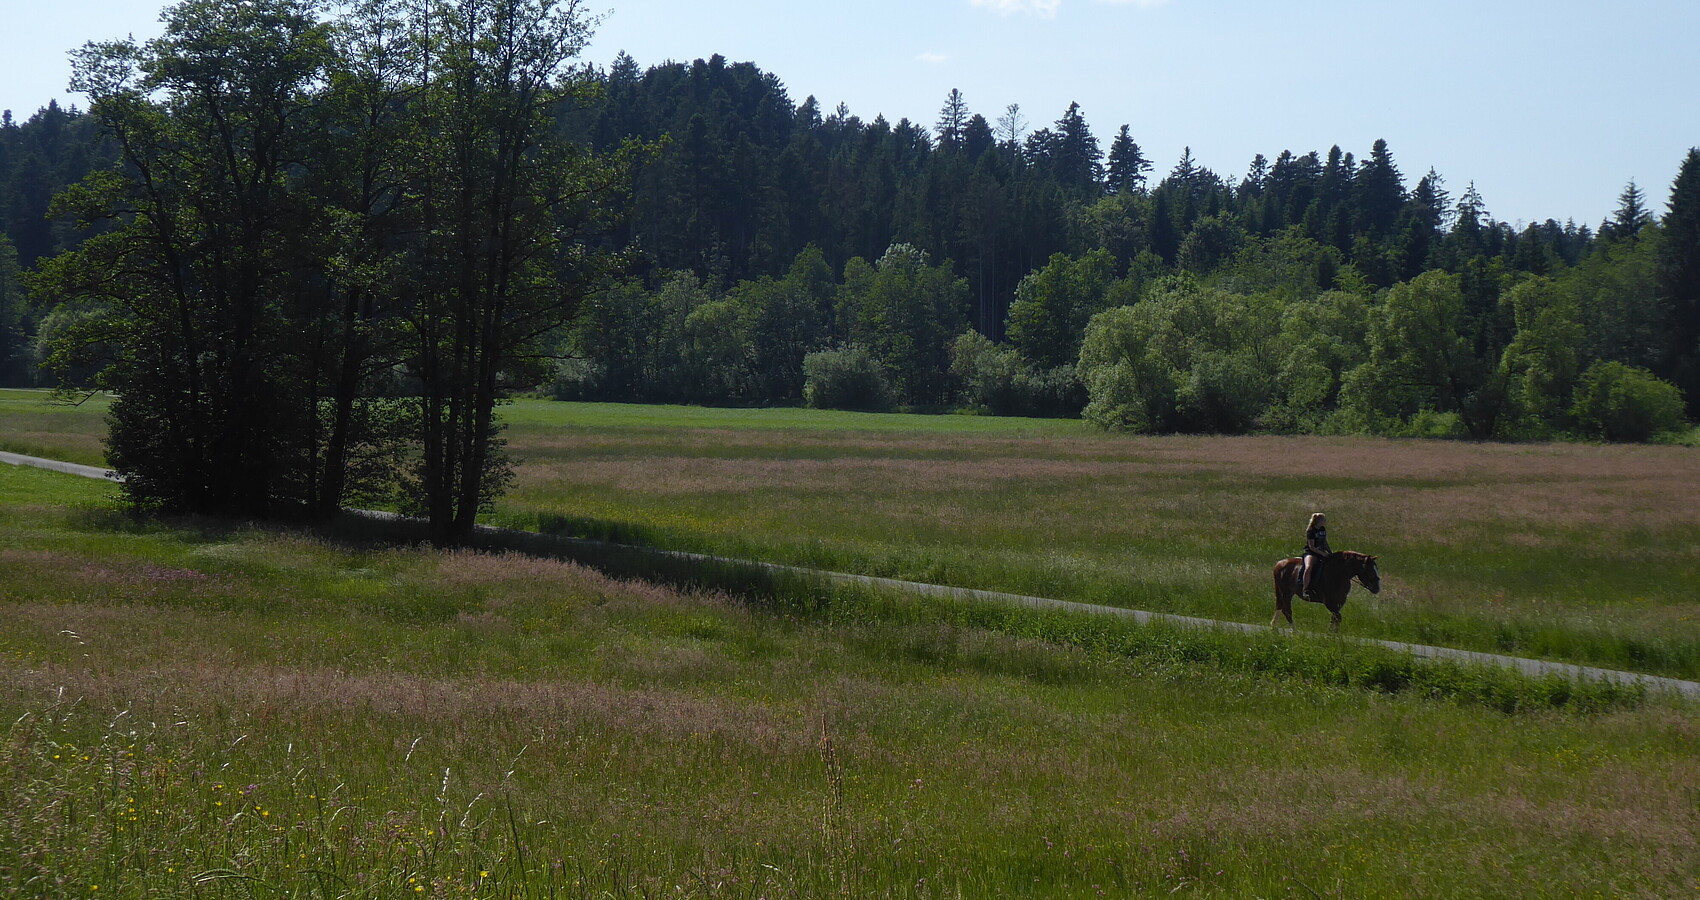 Ein Weg, rechts und links davon Wiesen, dahinter Wald, auf dem Weg reitet eine Reiterin auf einem braunen Pferd